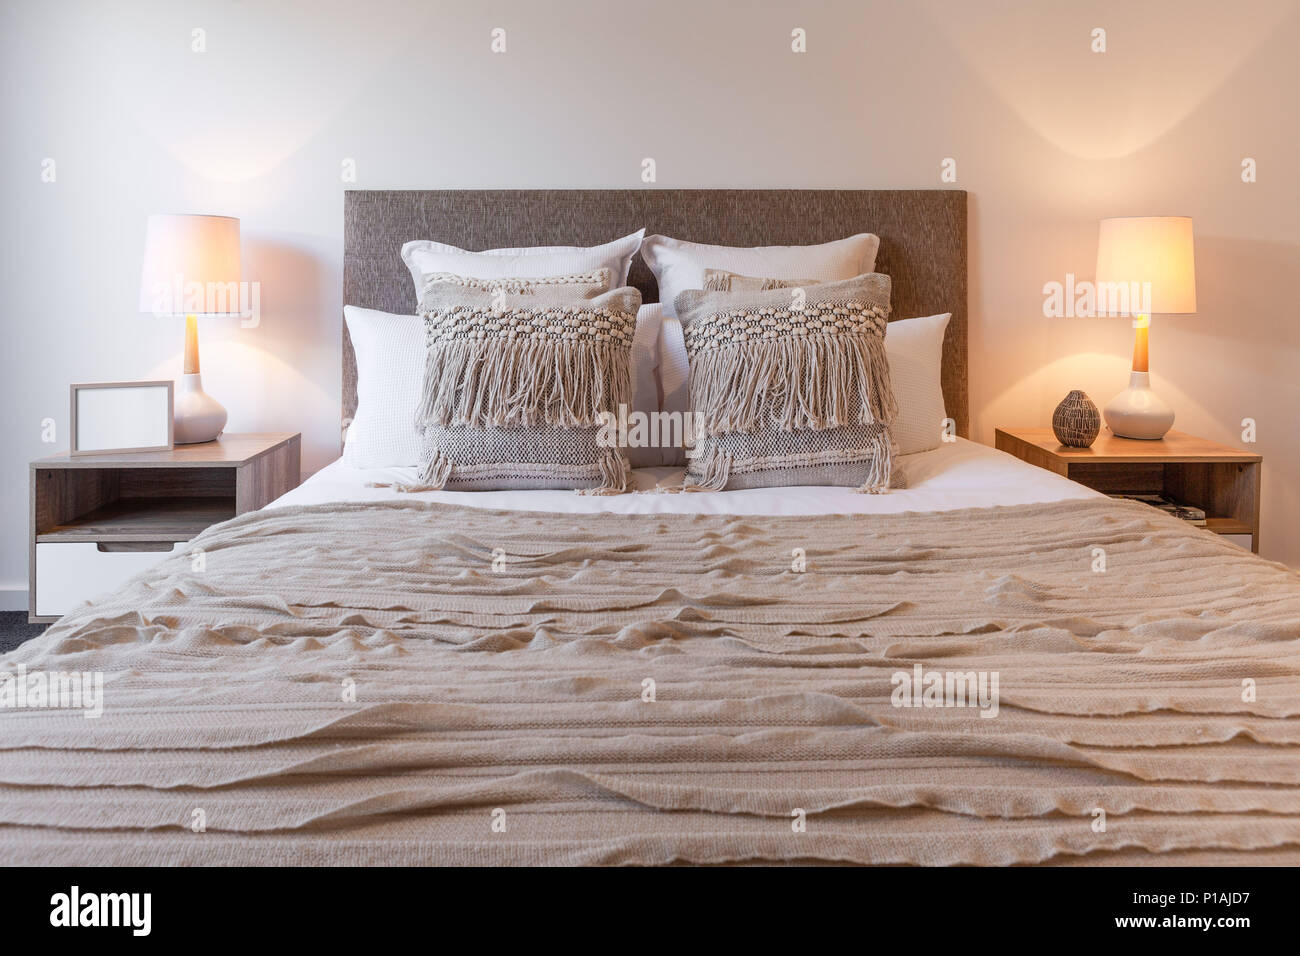 https://c8.alamy.com/compes/p1ajd7/almohadones-decorativos-de-acuerdo-con-cama-dormitorio-lamparas-y-mesitas-de-noche-p1ajd7.jpg